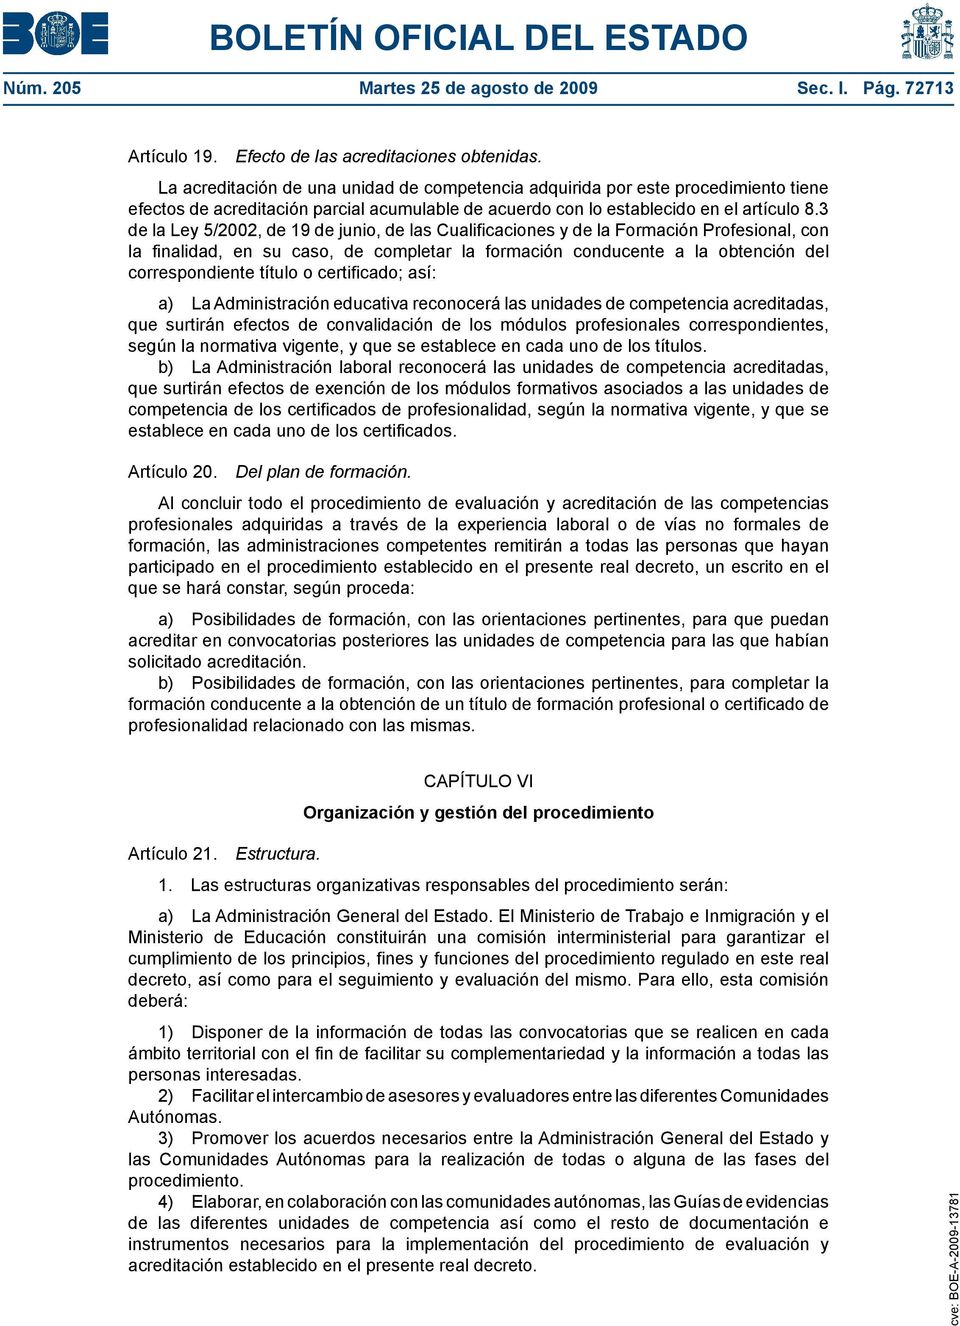 3 de la Ley 5/2002, de 19 de junio, de las Cualificaciones y de la Formación Profesional, con la finalidad, en su caso, de completar la formación conducente a la obtención del correspondiente título